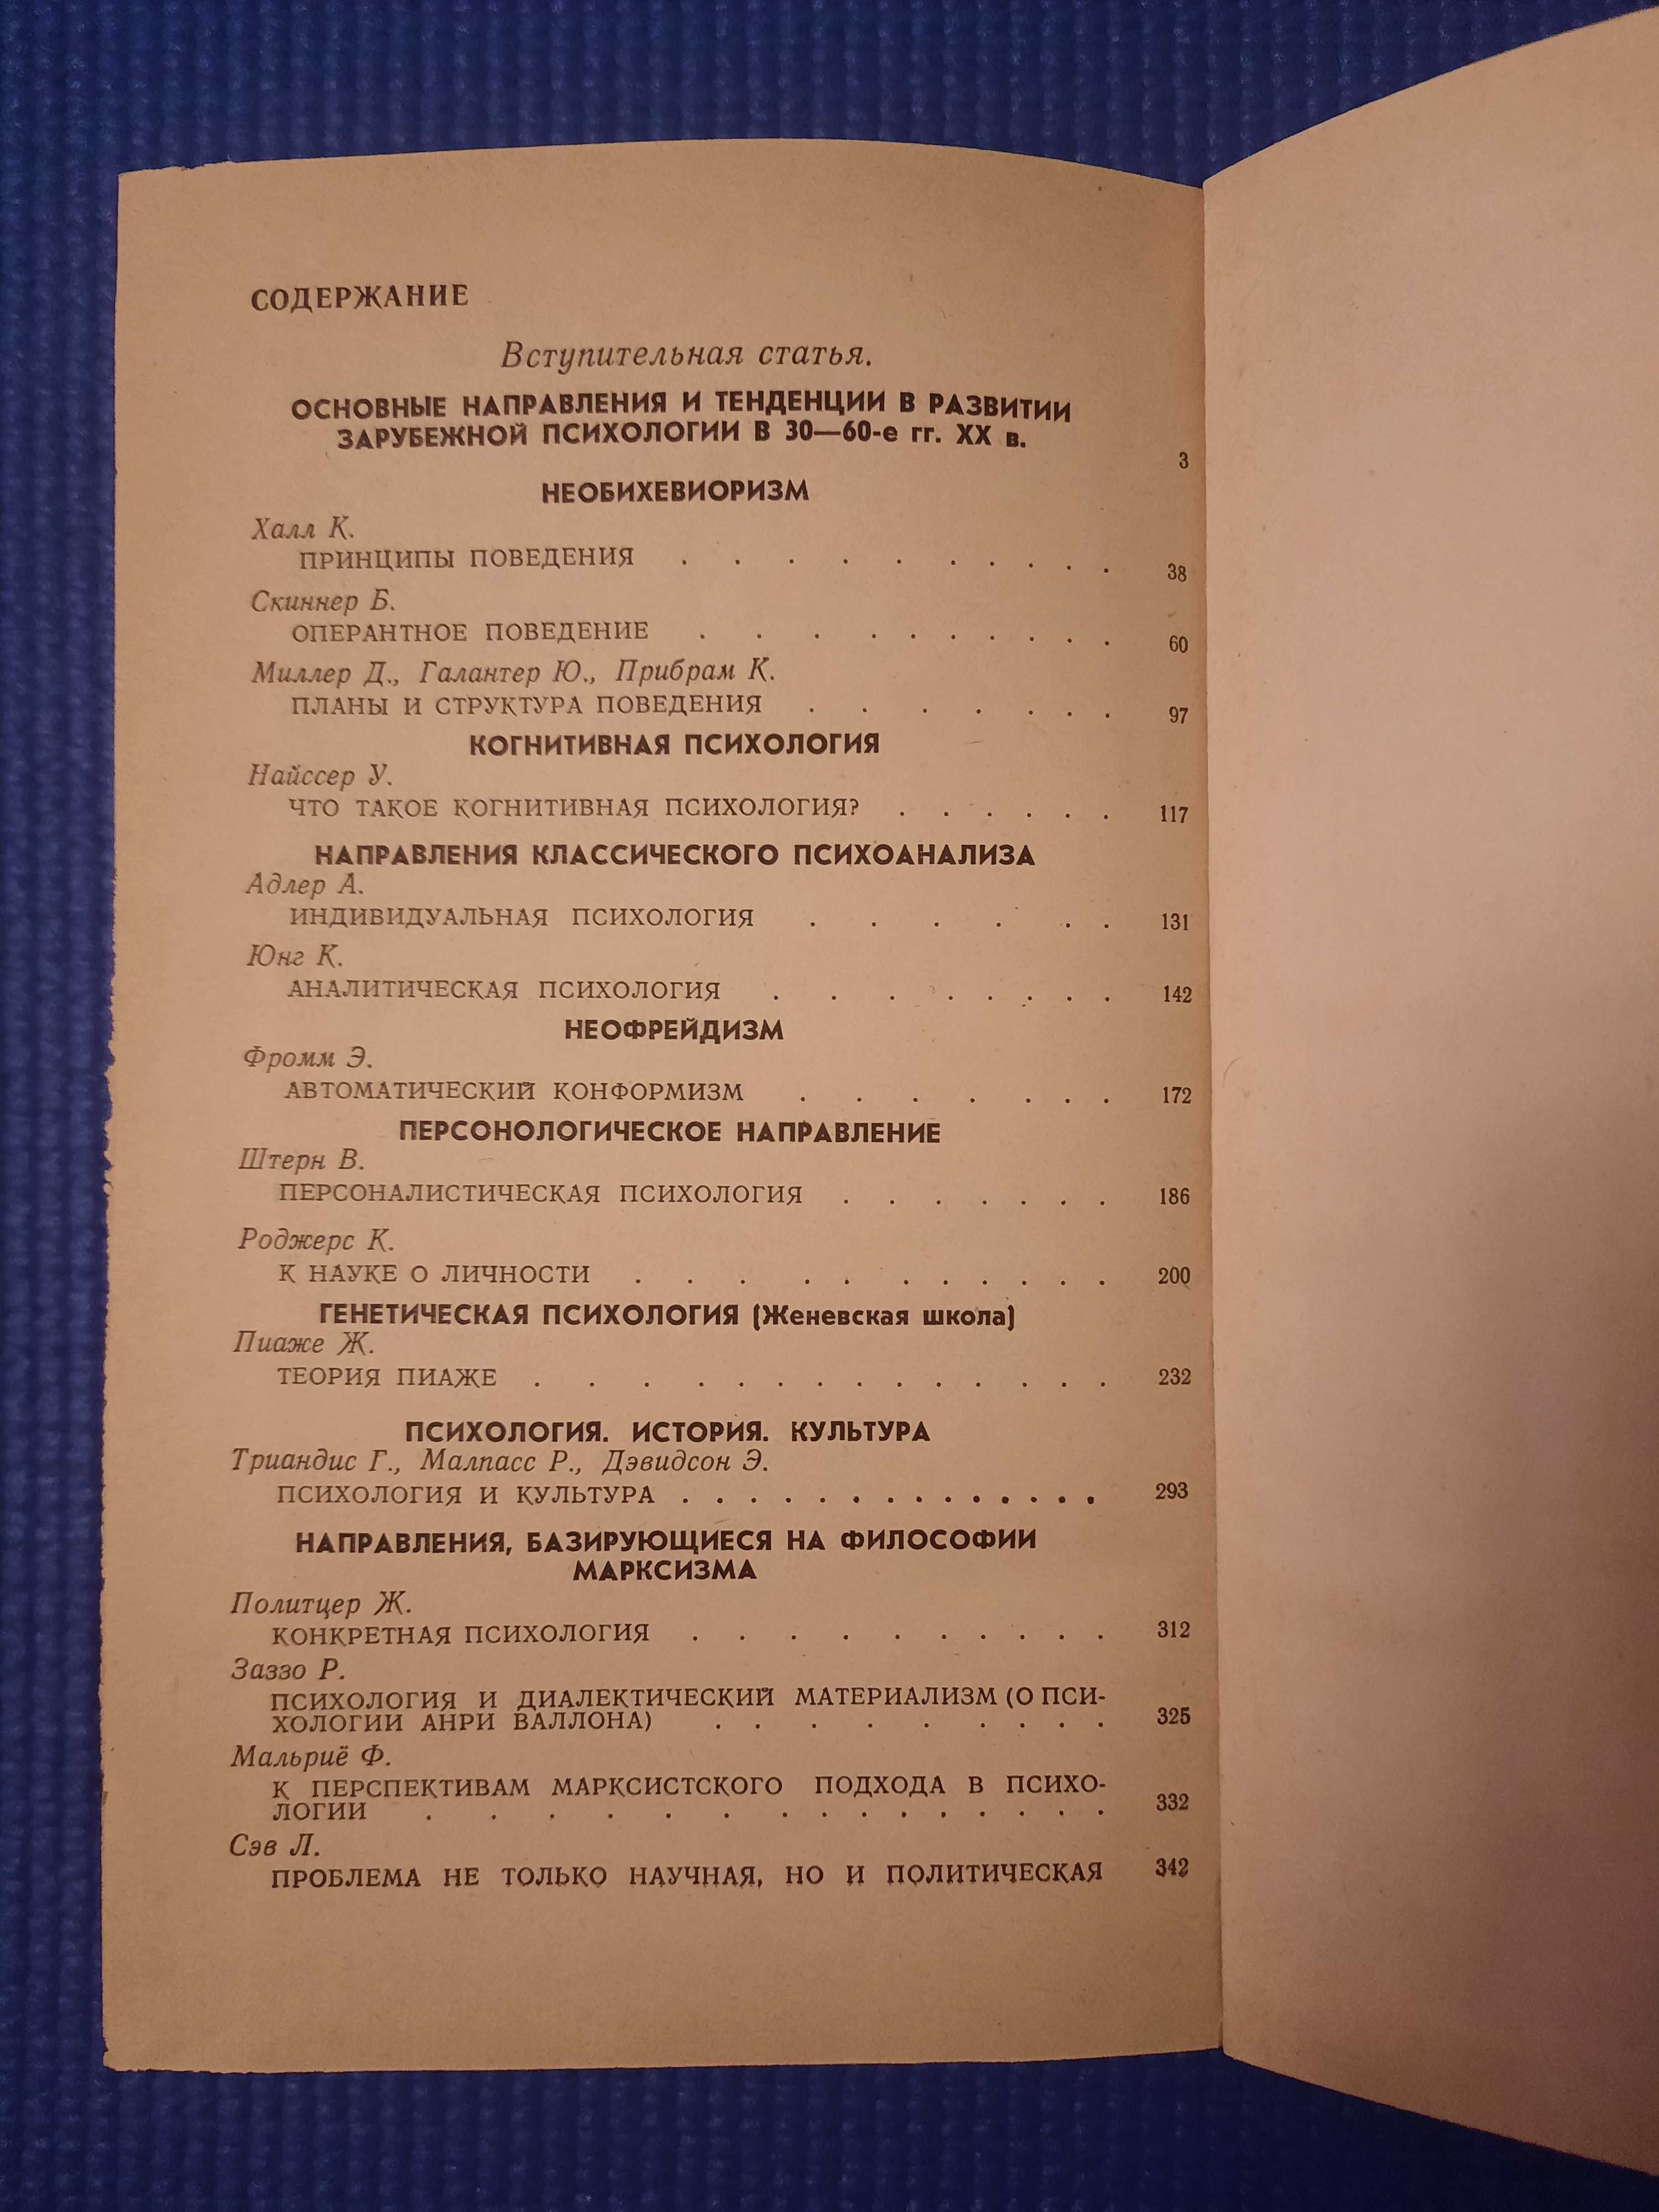 История зарубежной психологии. (30-е -60-е гг. хх в.) Тексты